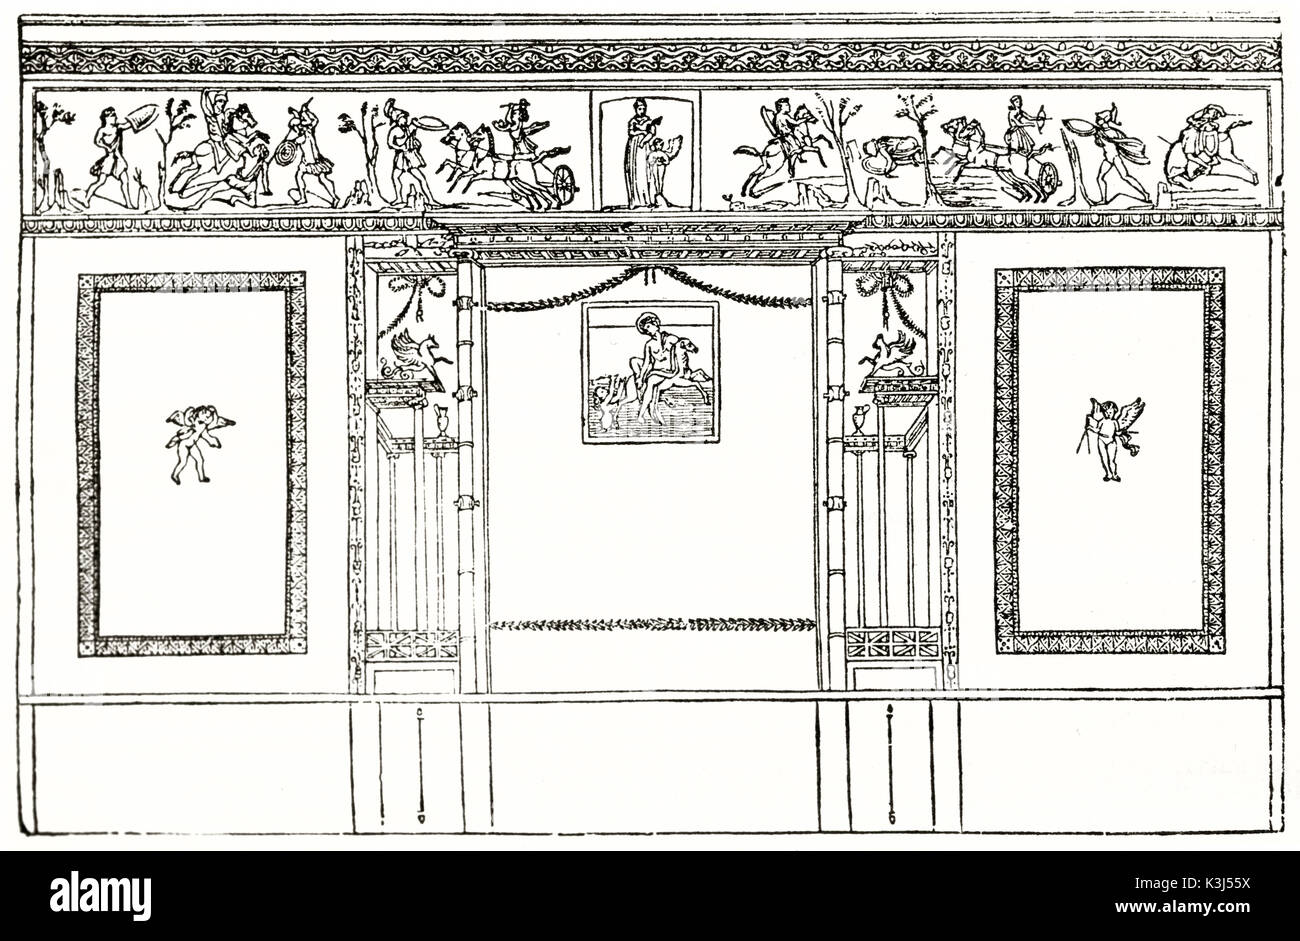 Vista de la antigua decoración mural en la casa del poeta trágico, Pompeya, Italia. Por autor desconocido, publicado en el Magasin pintoresco, París, 1838 Foto de stock